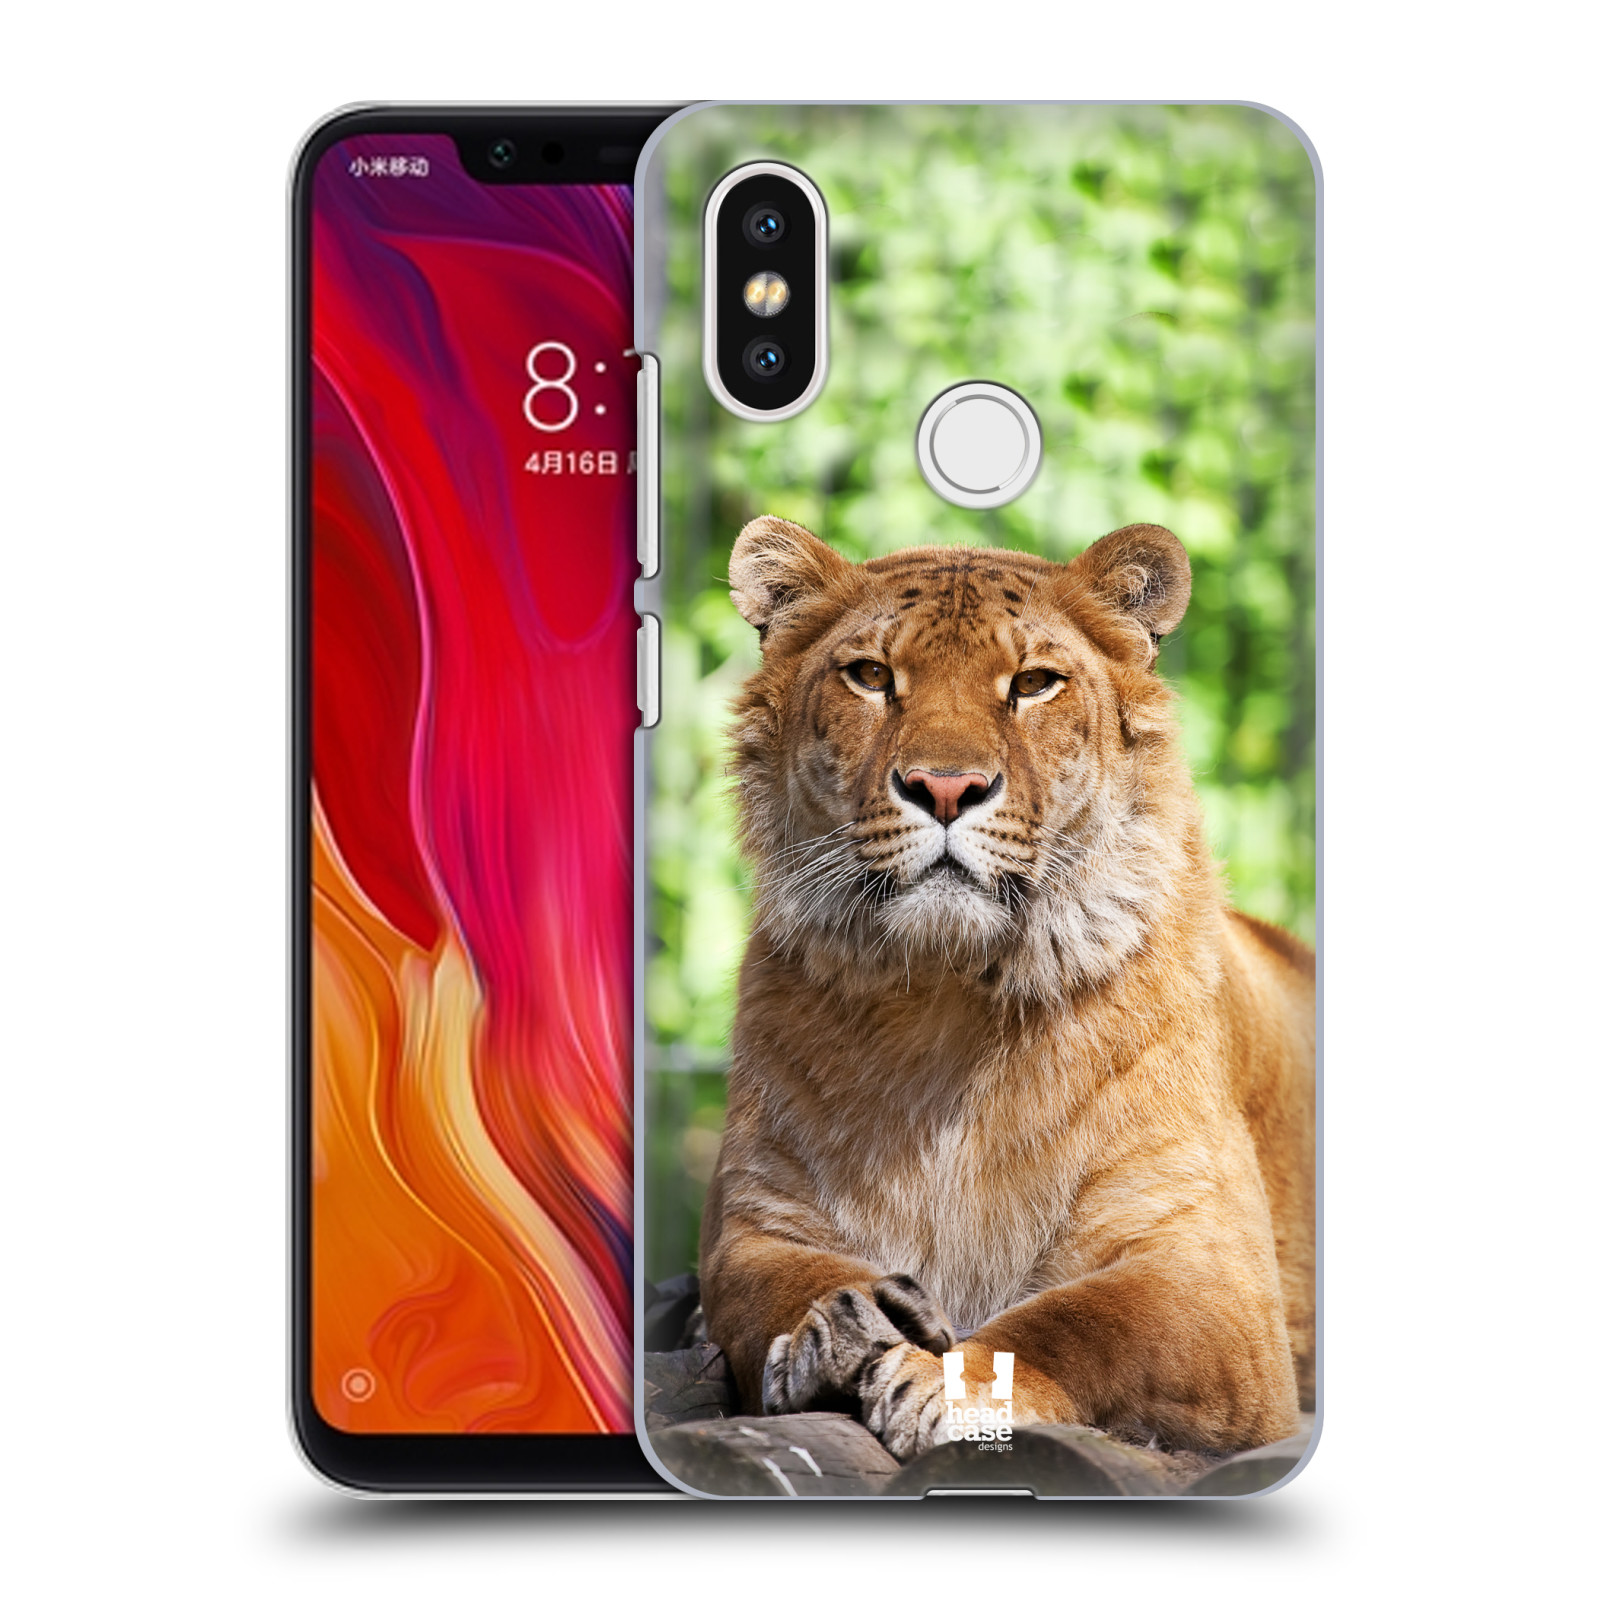 HEAD CASE plastový obal na mobil Xiaomi Mi 8 vzor slavná zvířata foto tygr